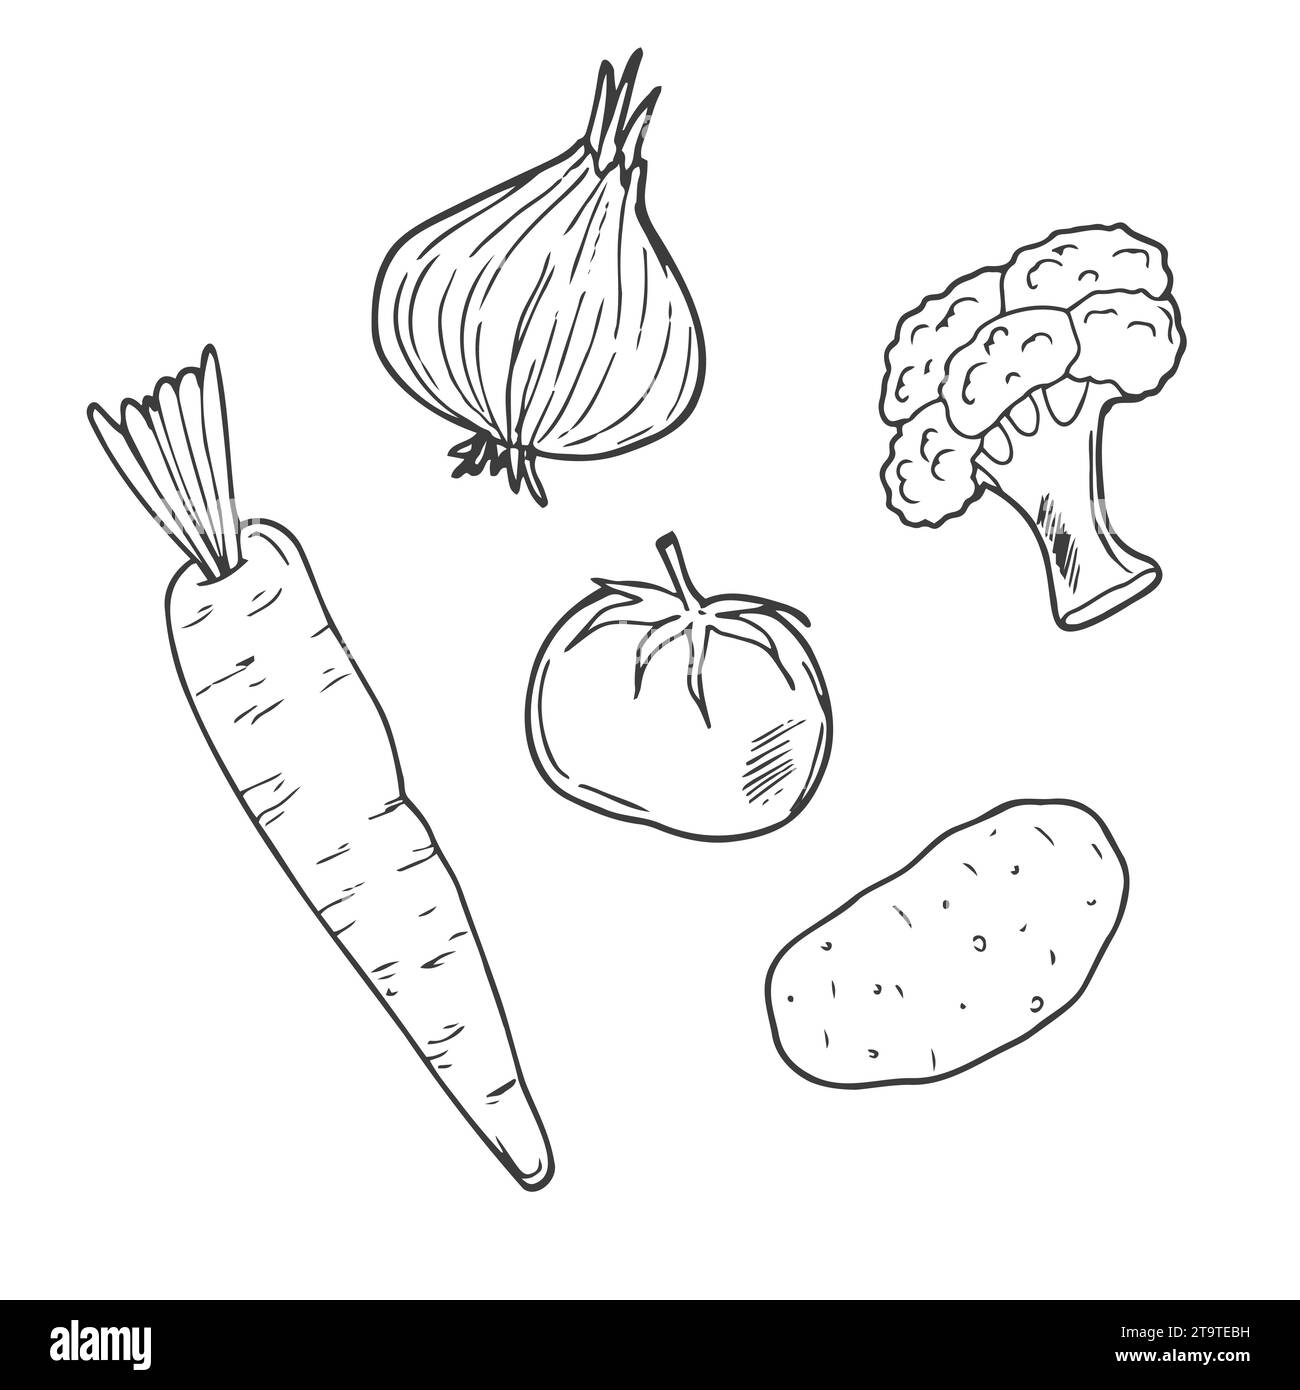 Vektor-Set mit Kritzelzeichnungen von Gemüse: Karotten, Mais, Tomaten, Pilze, Gurke, Kohl, Kartoffeln, Kürbis, Paprika, Brokkoli Erbsenzwiebeln Stock Vektor